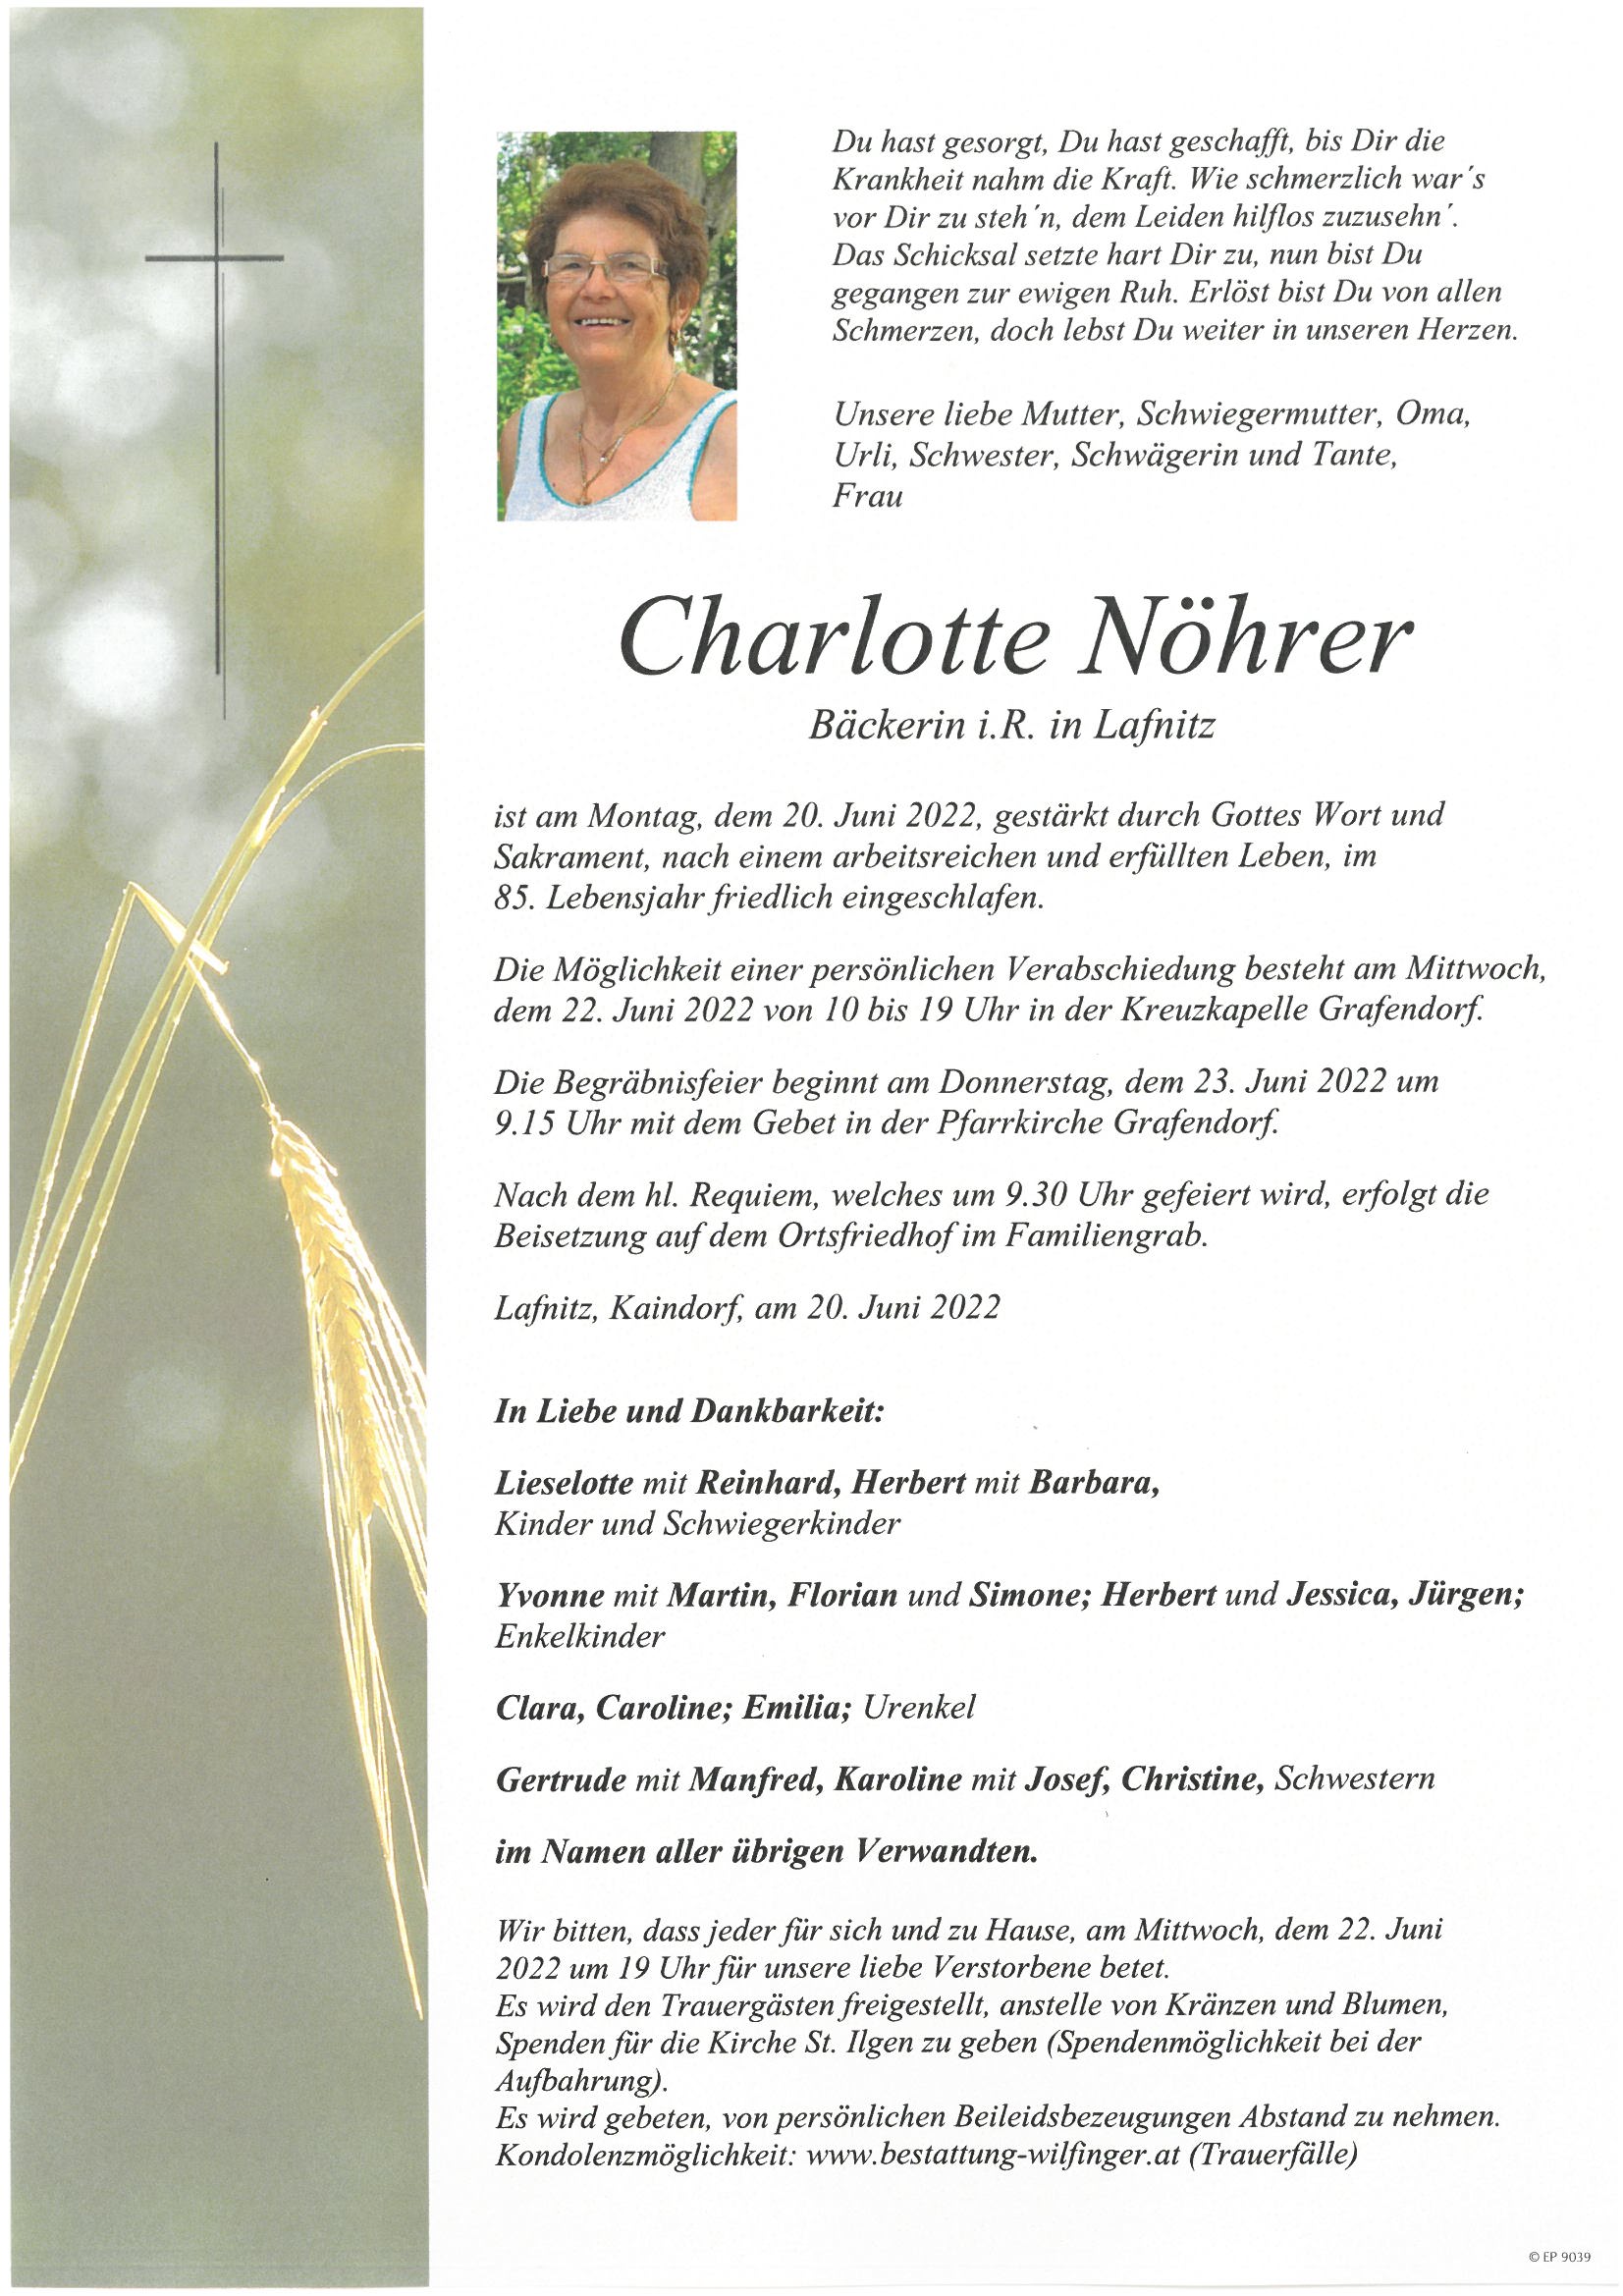 Charlotte Nöhrer, Lafnitz